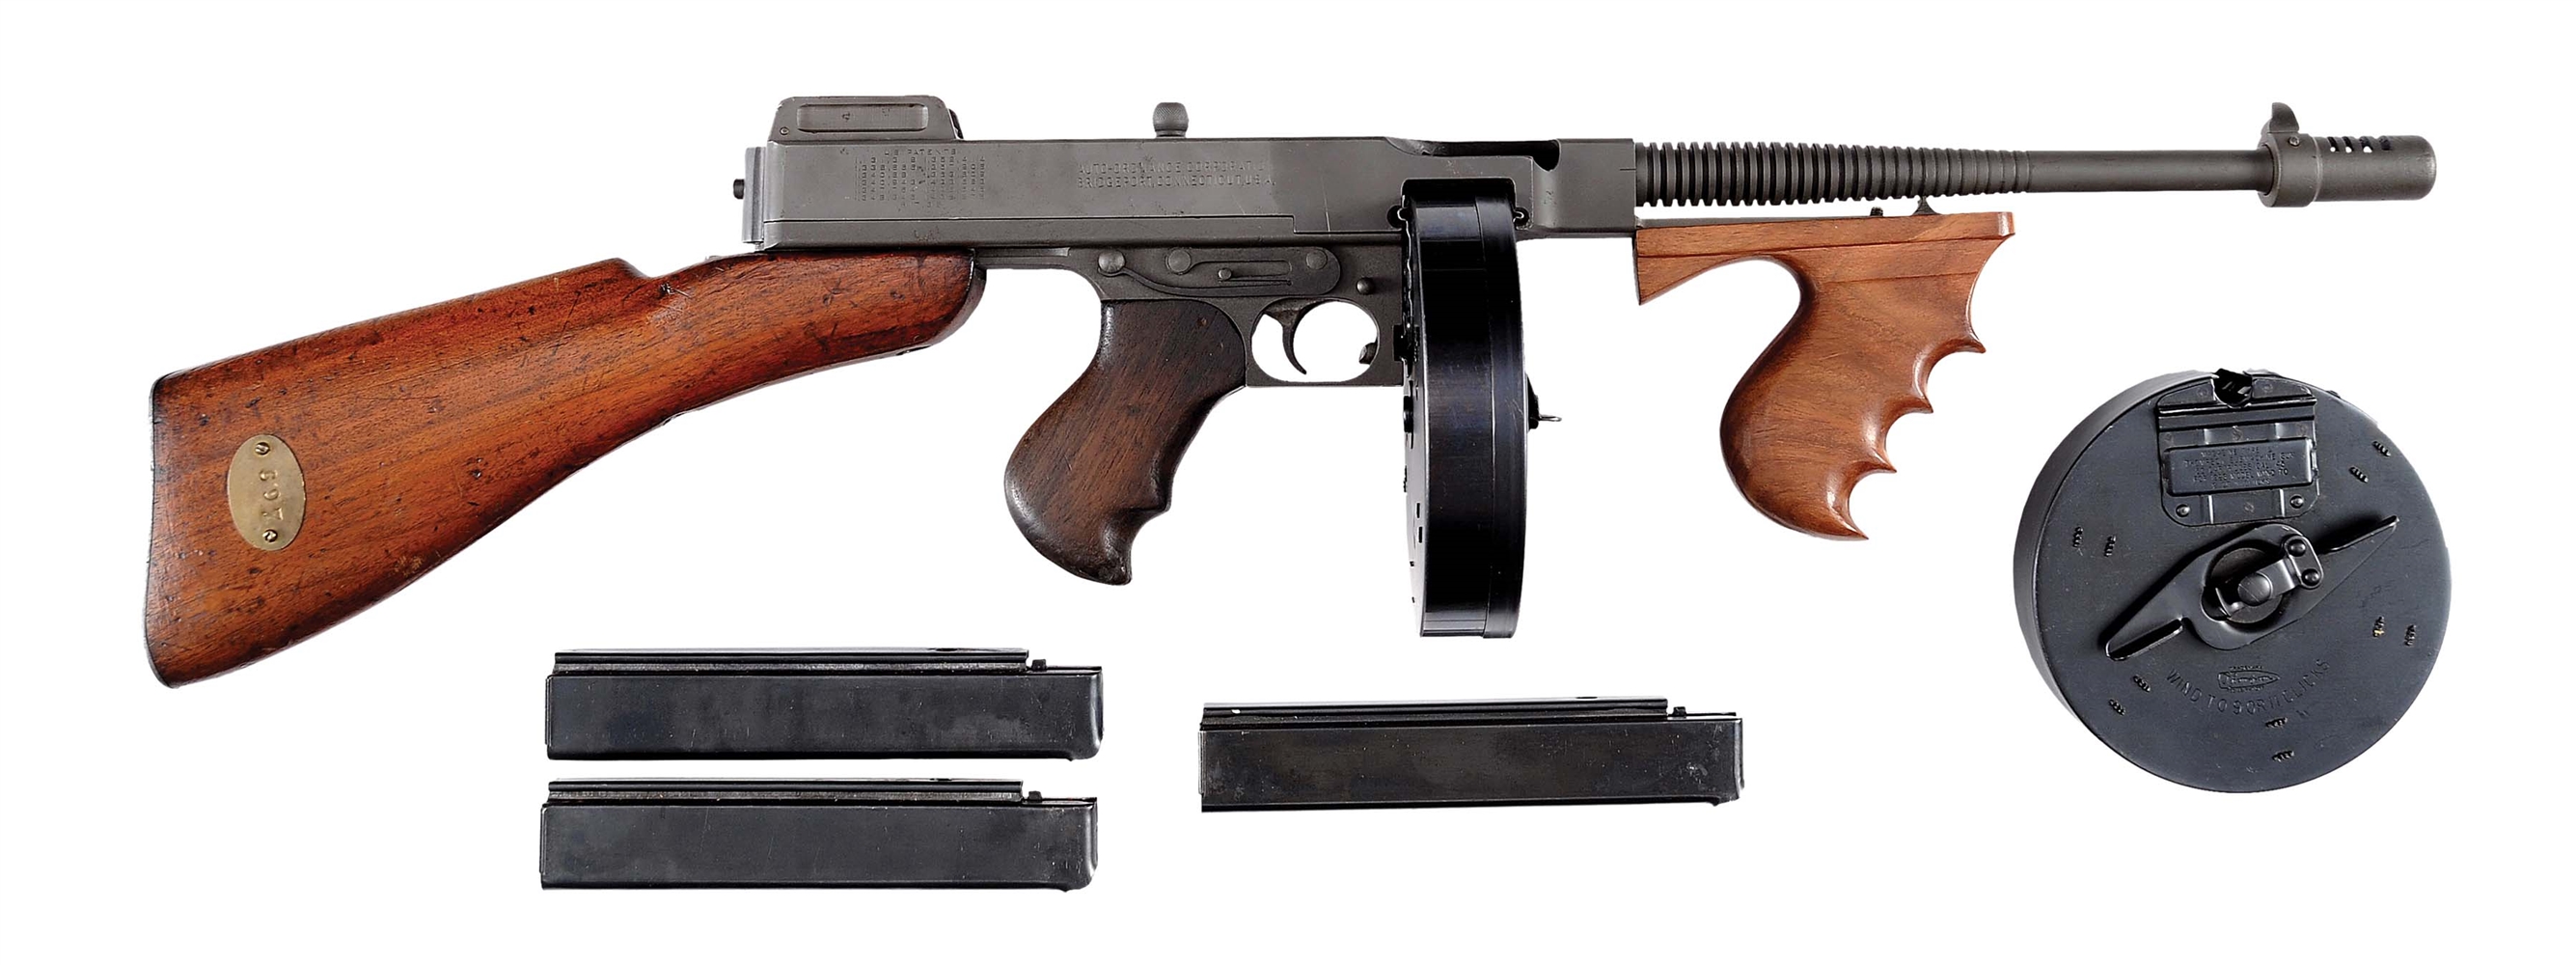 (N) CLASSIC WWII ERA SAVAGE MANUFACTURED 1928 A1 THOMPSON MACHINE GUN (CURIO & RELIC). 